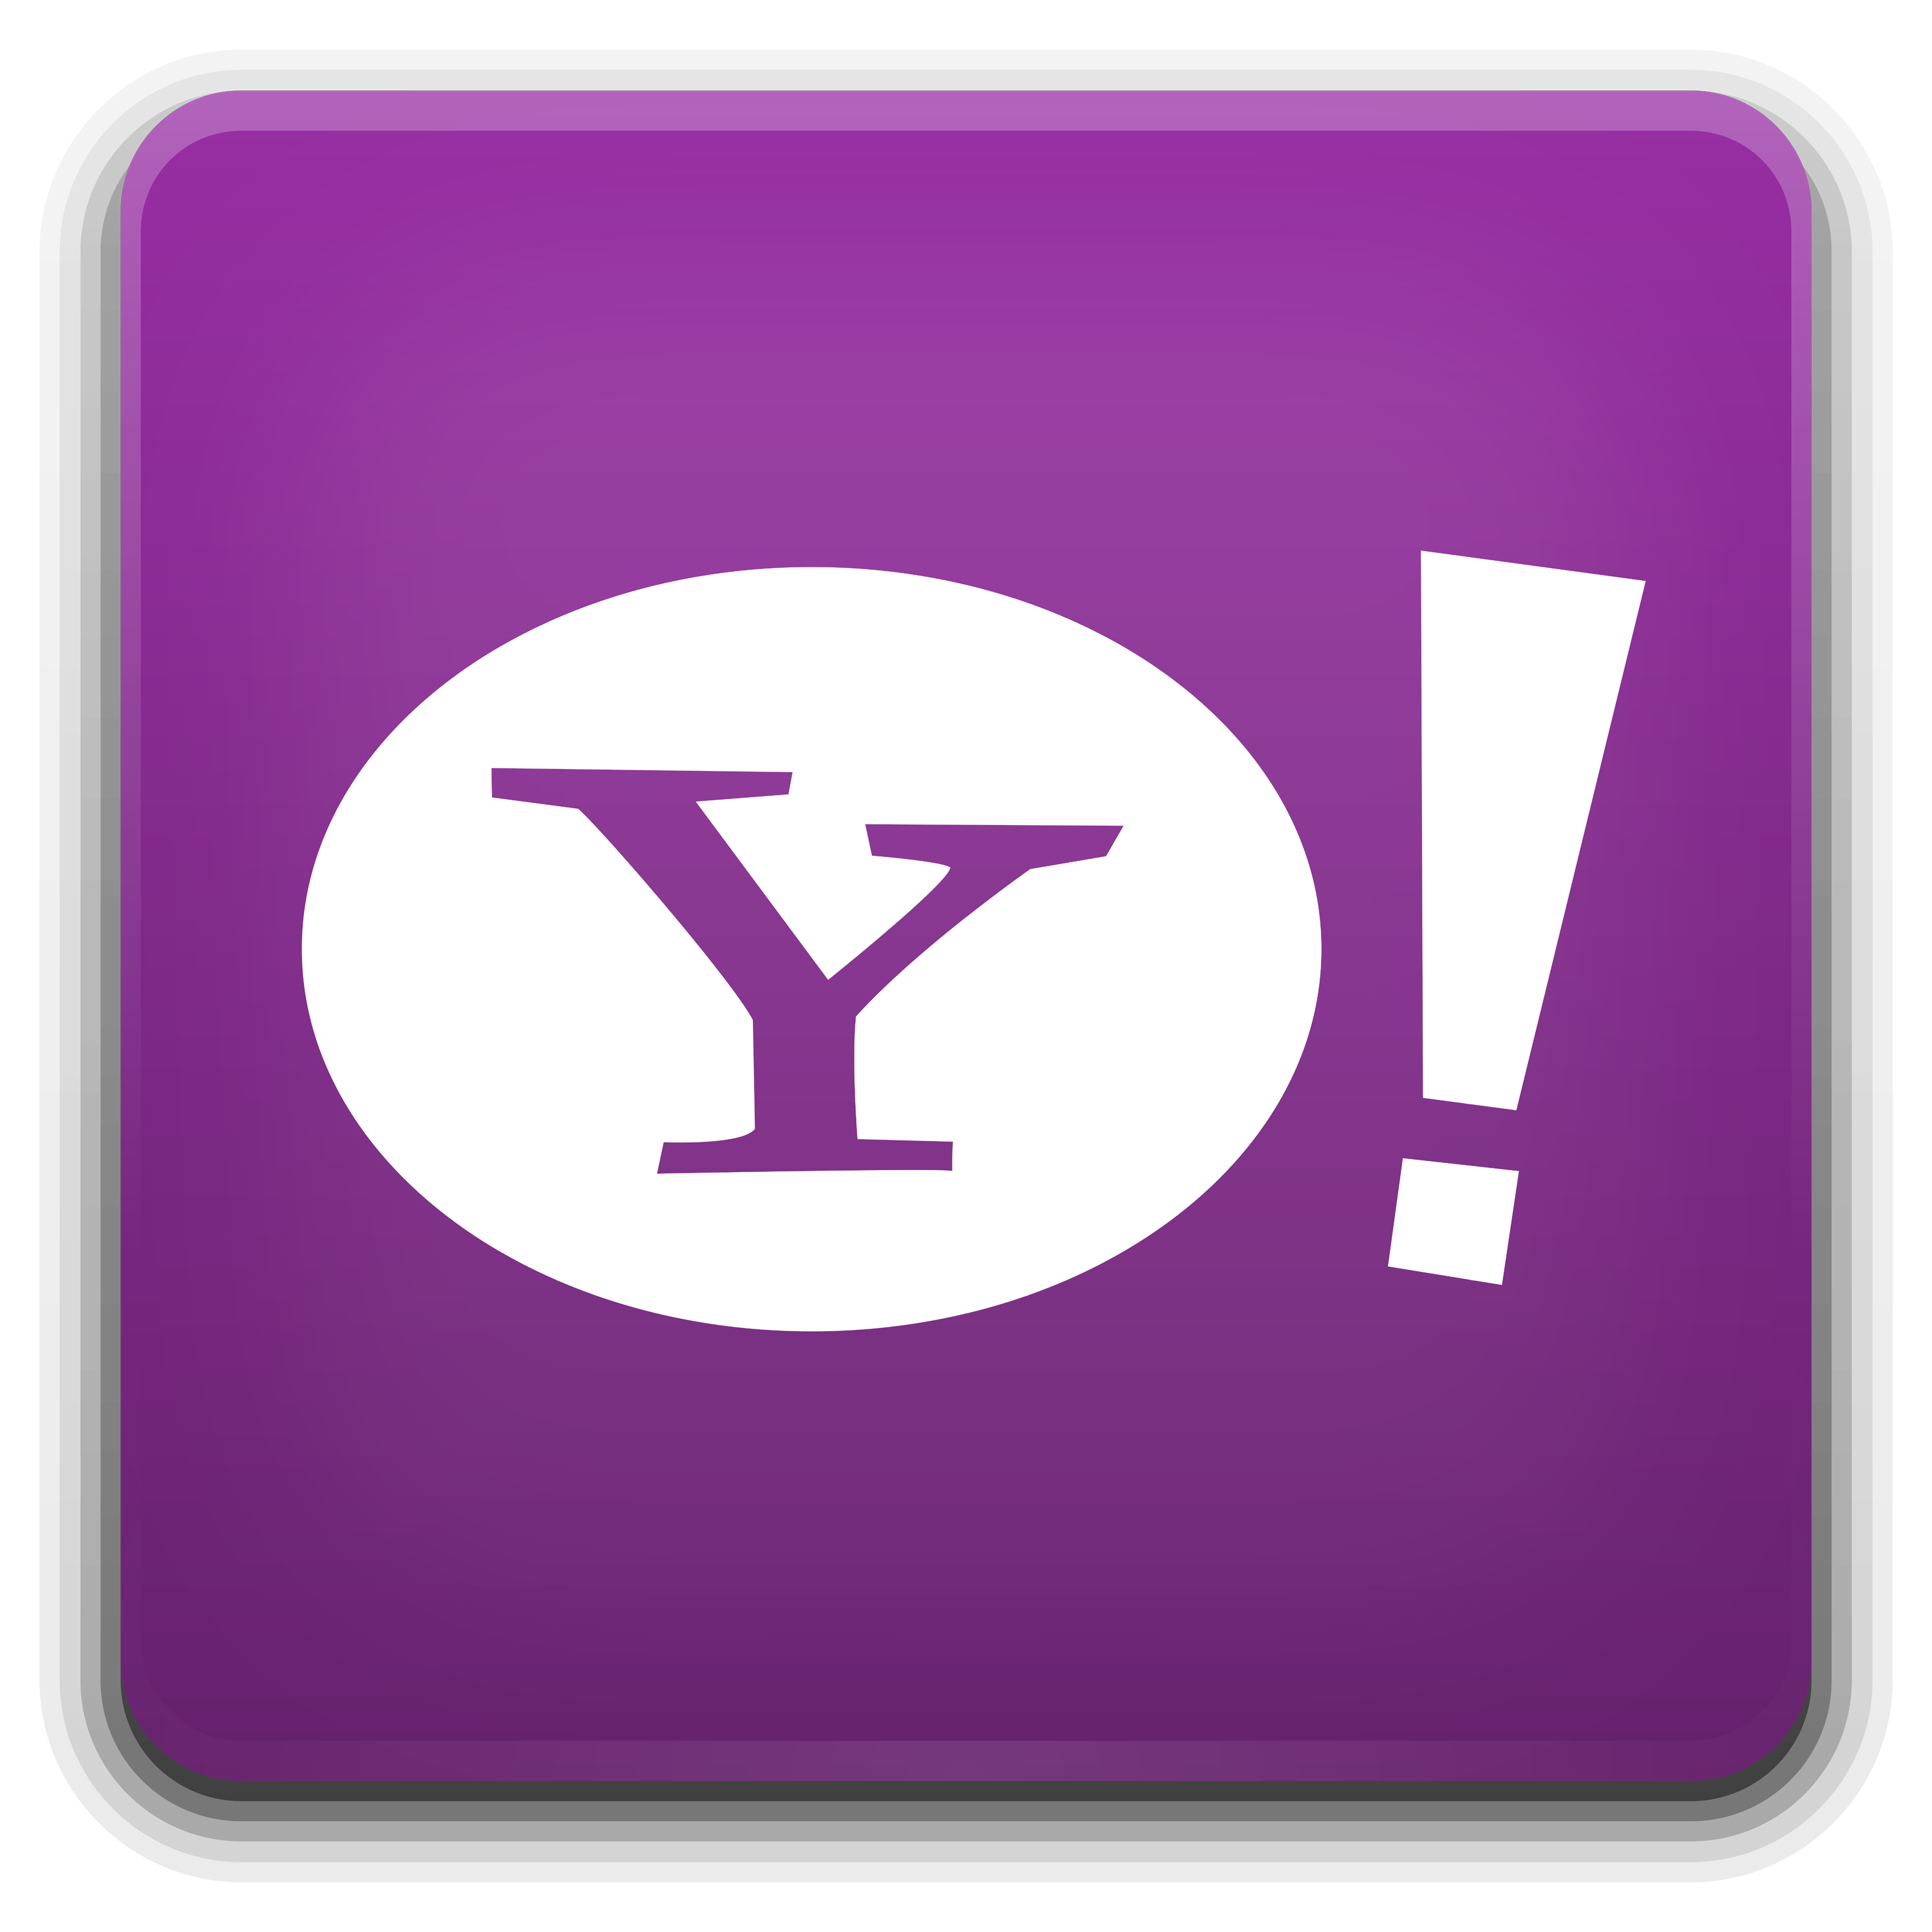 Yahoo Faenza 2009 Logo Transparent Image